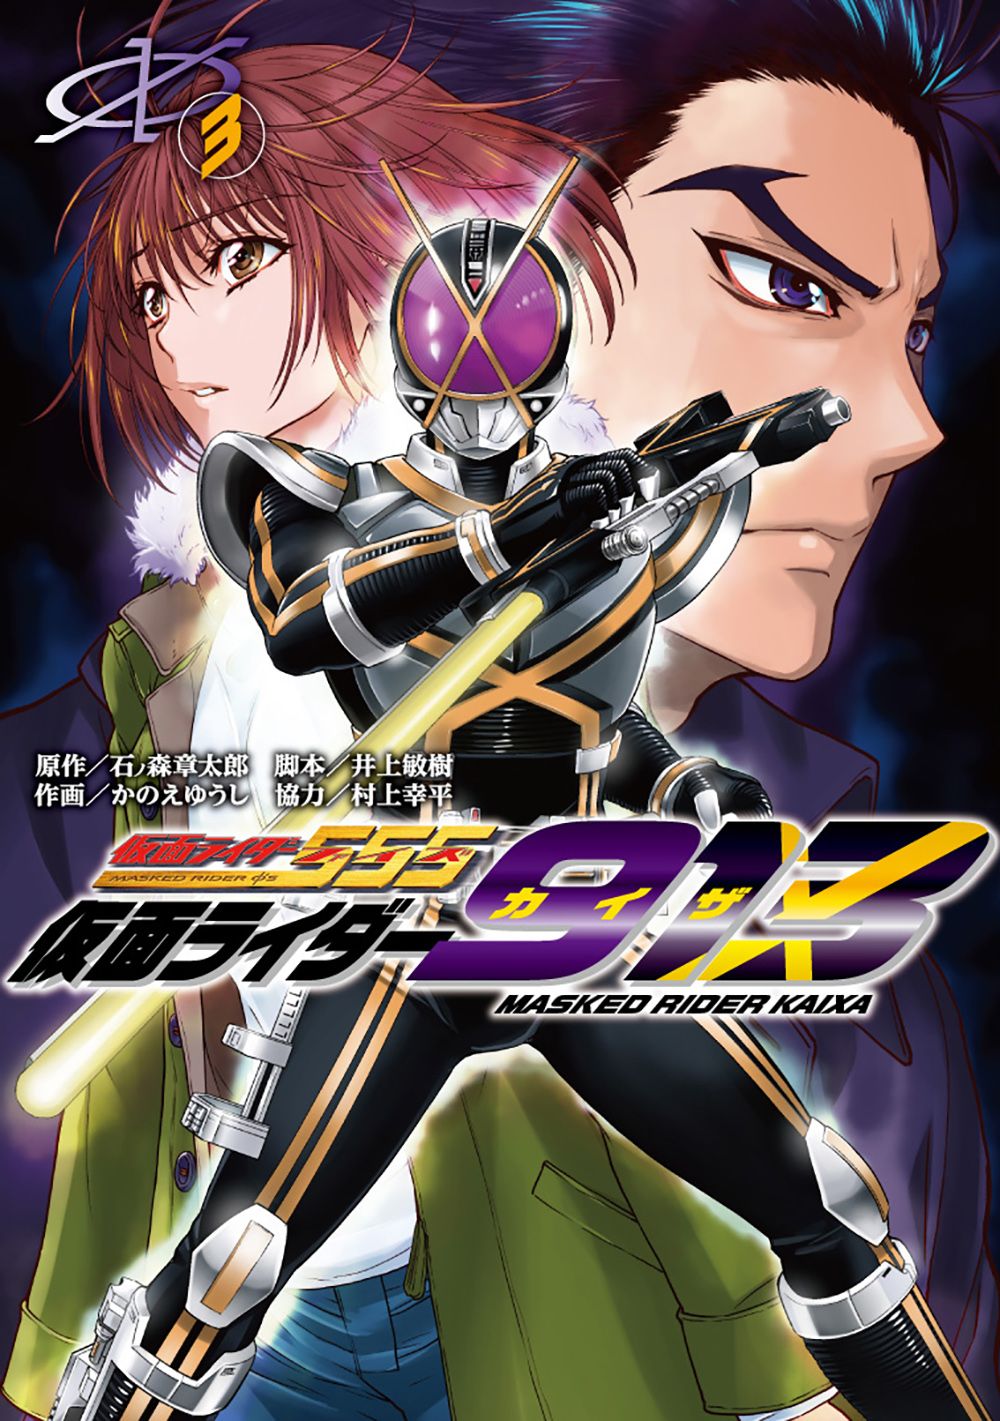 Kamen Rider 913 (Kaixa) cover 3